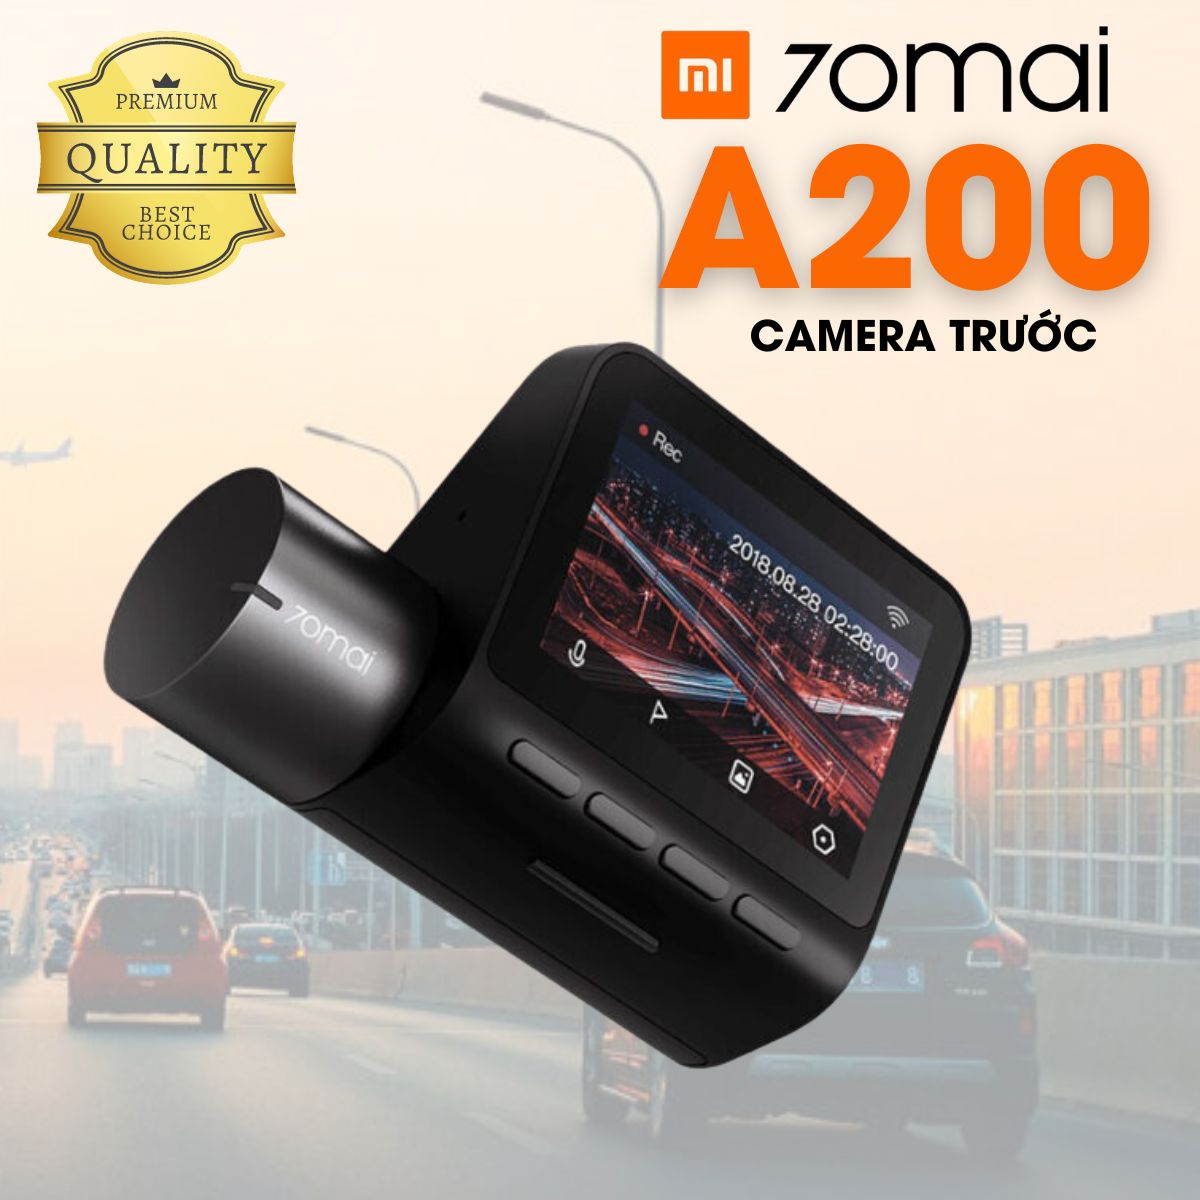 Camera hành trình 70mai A200 (bản trước) 2MP, 1080P, góc hình 130 độ, màn hình 2inch